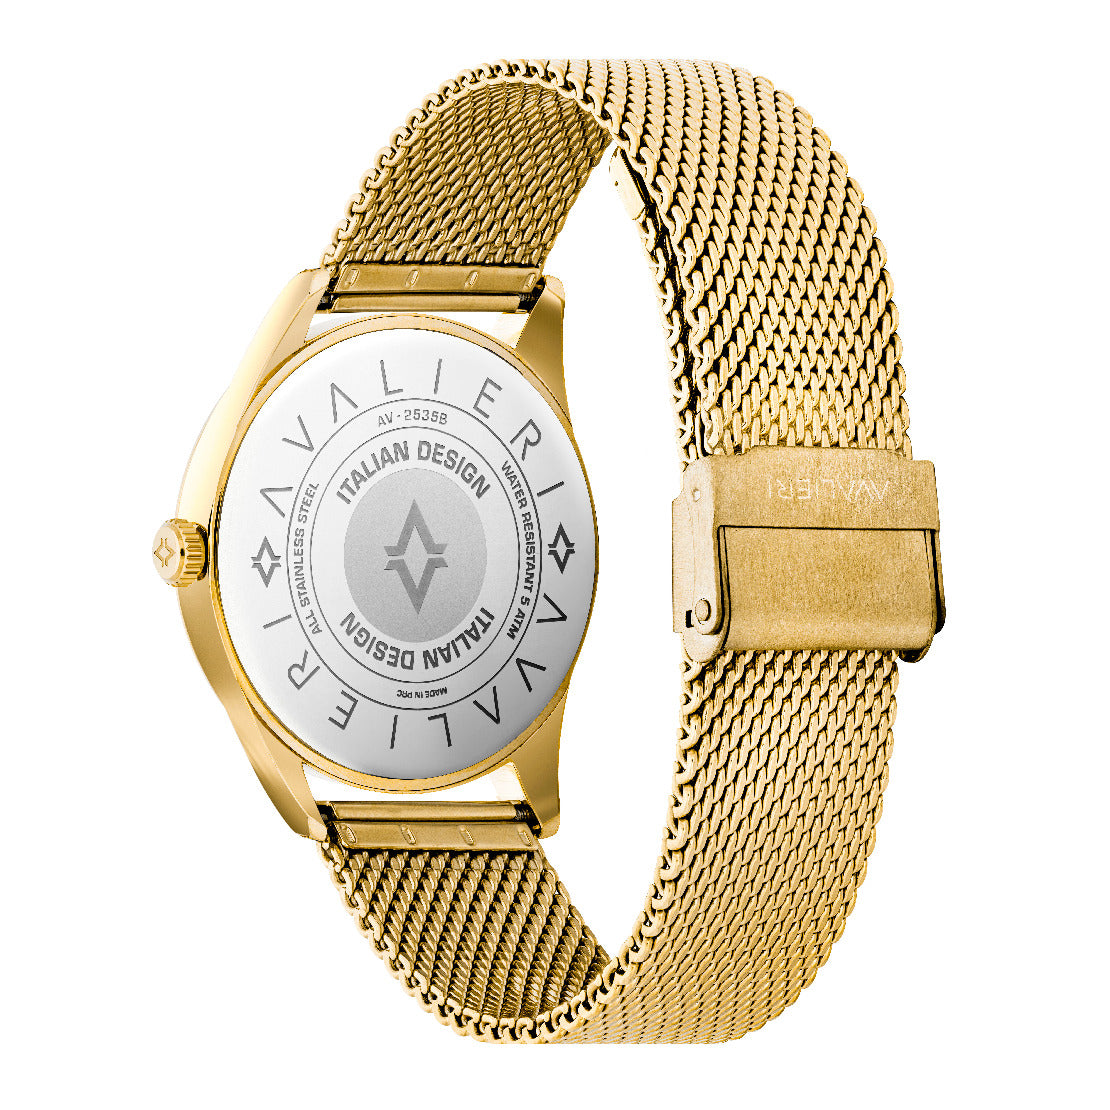 Avalieri Men's Quartz Watch, White Dial - AV-2535B